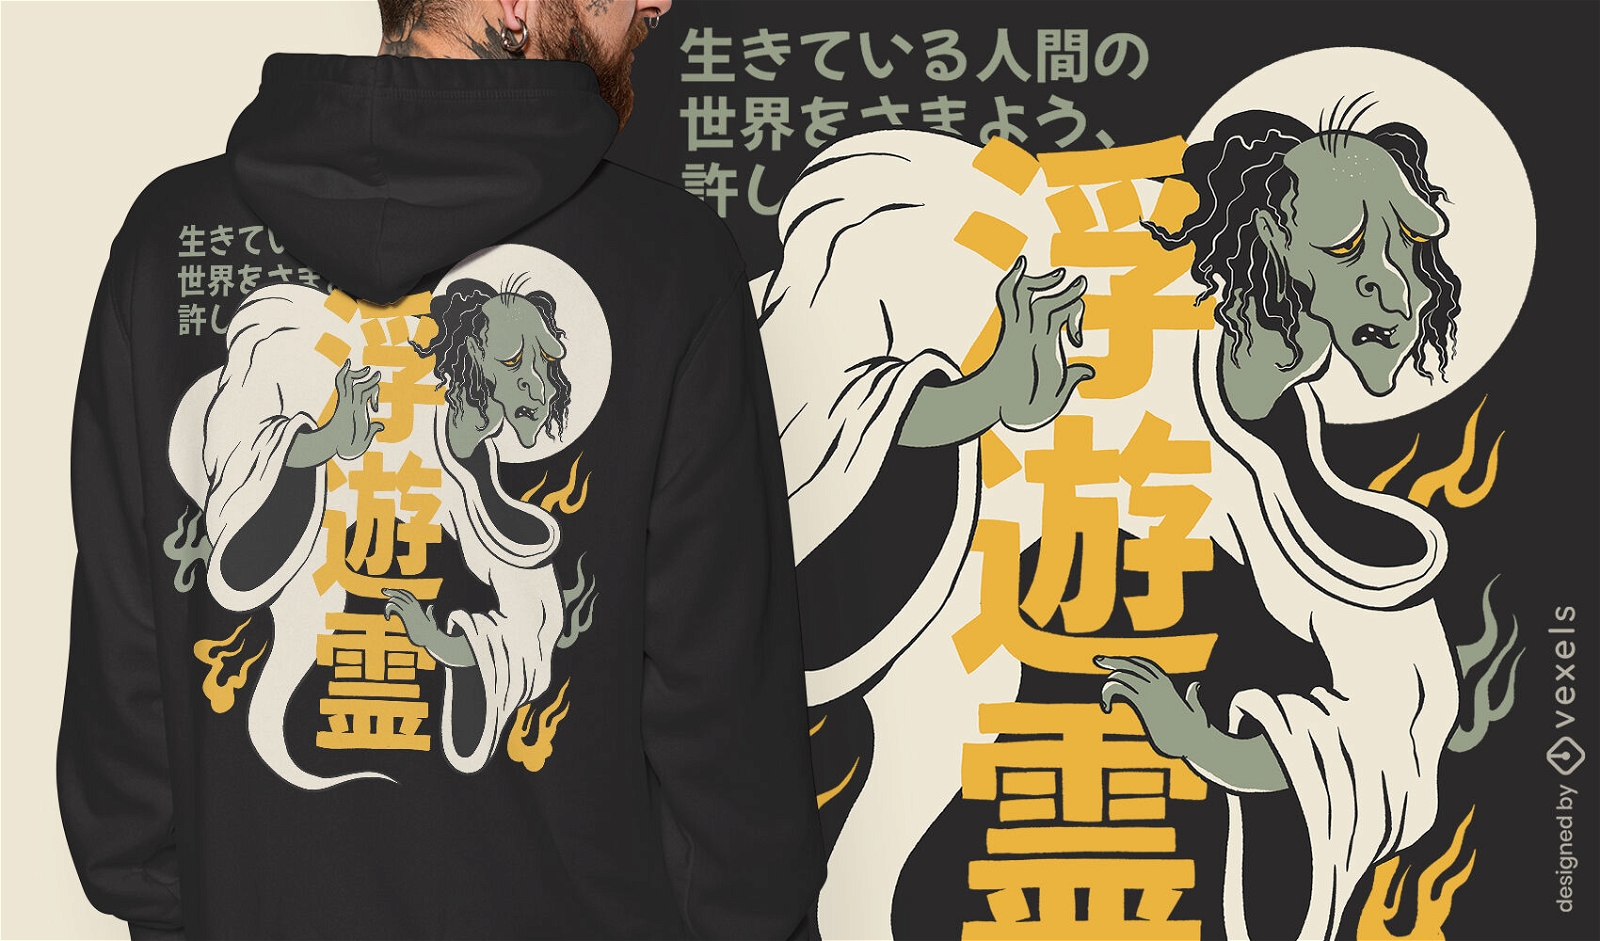 Gruseliger T-Shirt Entwurf des japanischen Geistes